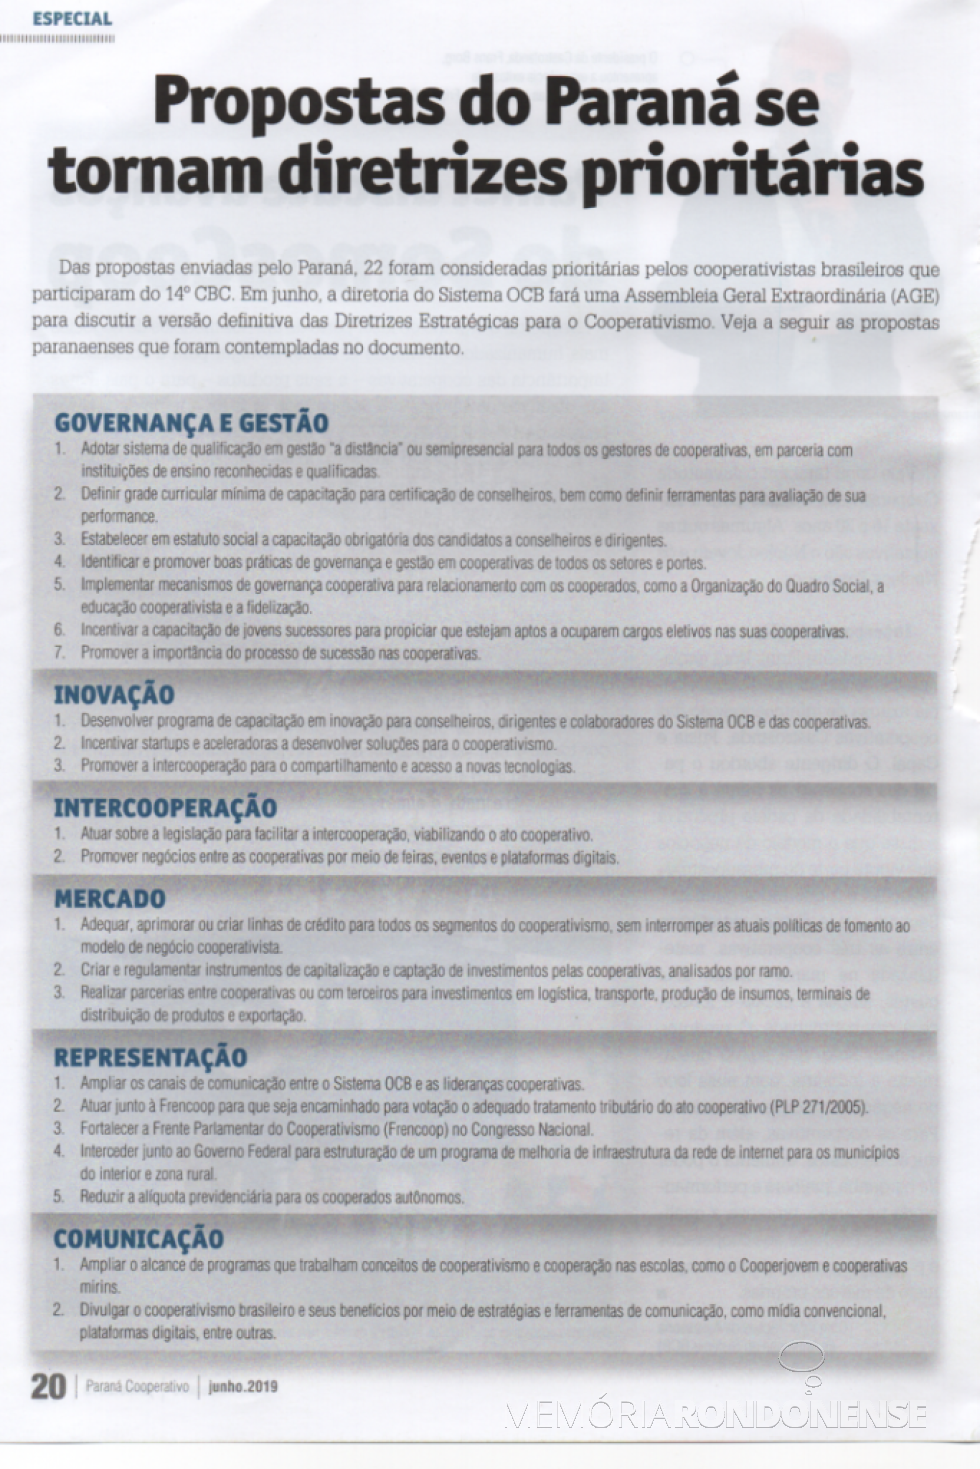 Propostas das cooperativas paranaenses que ganharam destaque no 14º Congresso Nacional de Cooperativismo, em maio de 2019. 
Imagem: Acervo Revista Ocepar - FOTO 10 --